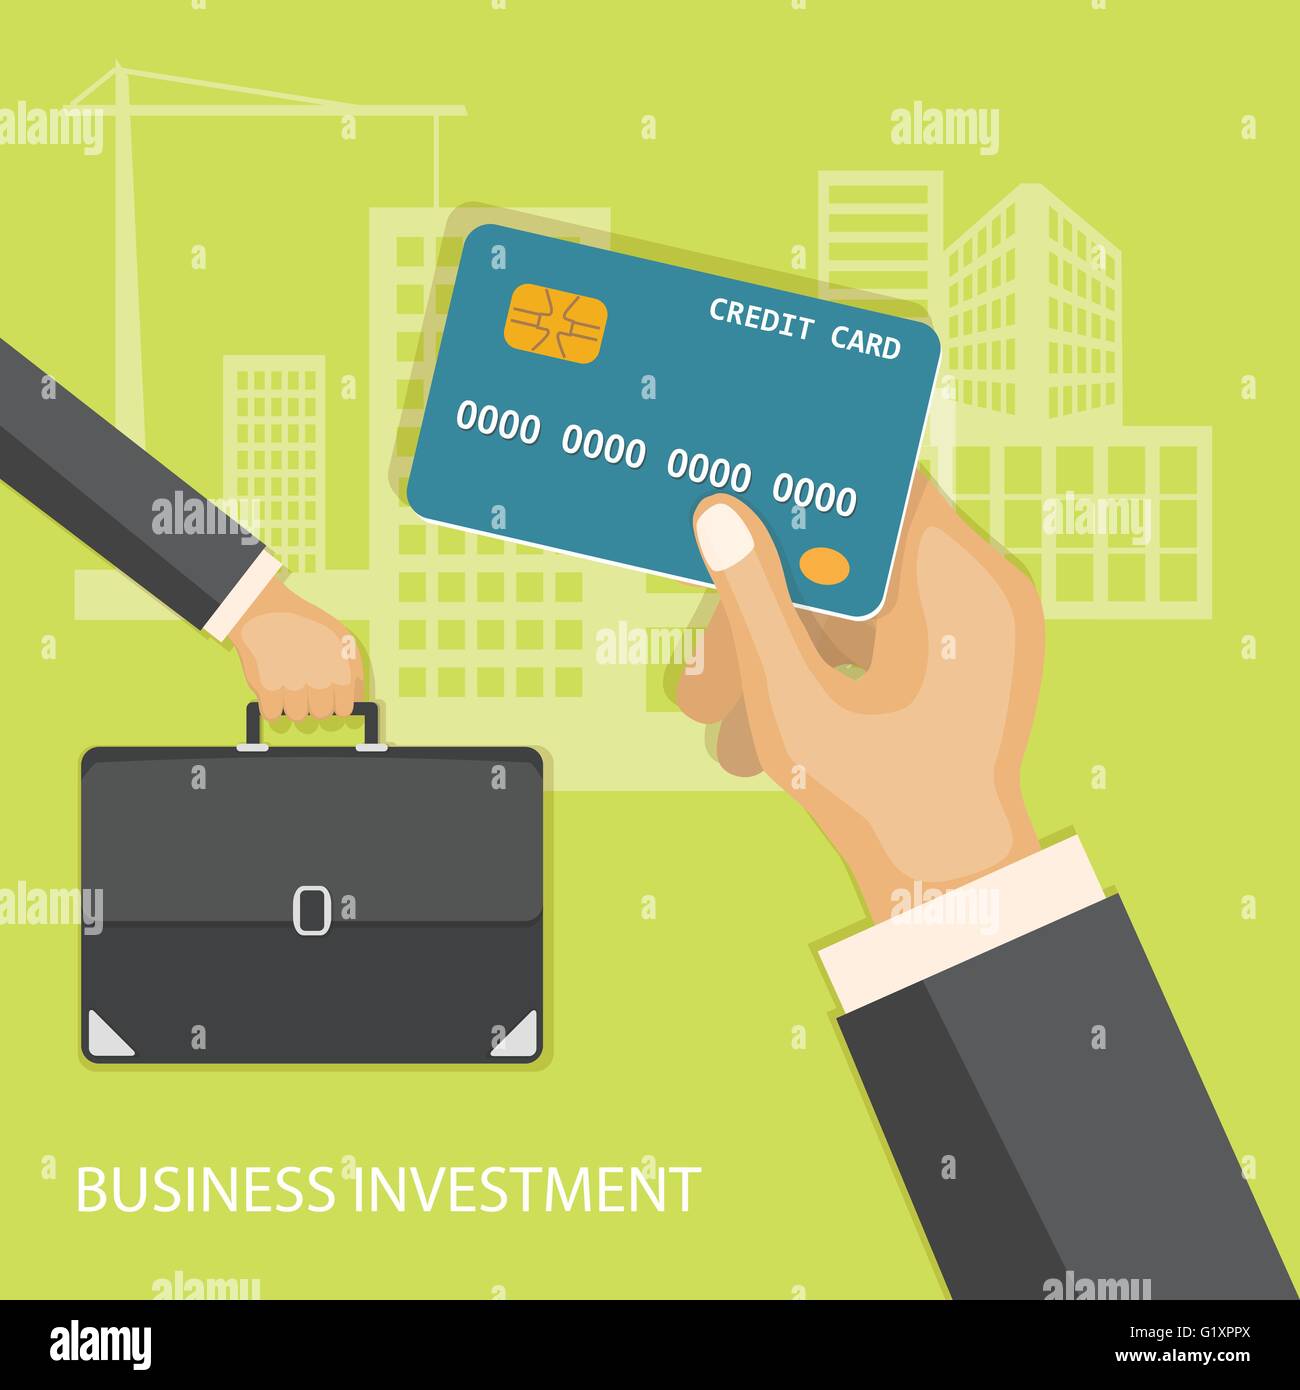 Flaches Design moderne Vector Illustration Konzept der Unternehmensinvestitionen, Internet Banking mit Kreditkarte in der Hand und briefca Stock Vektor